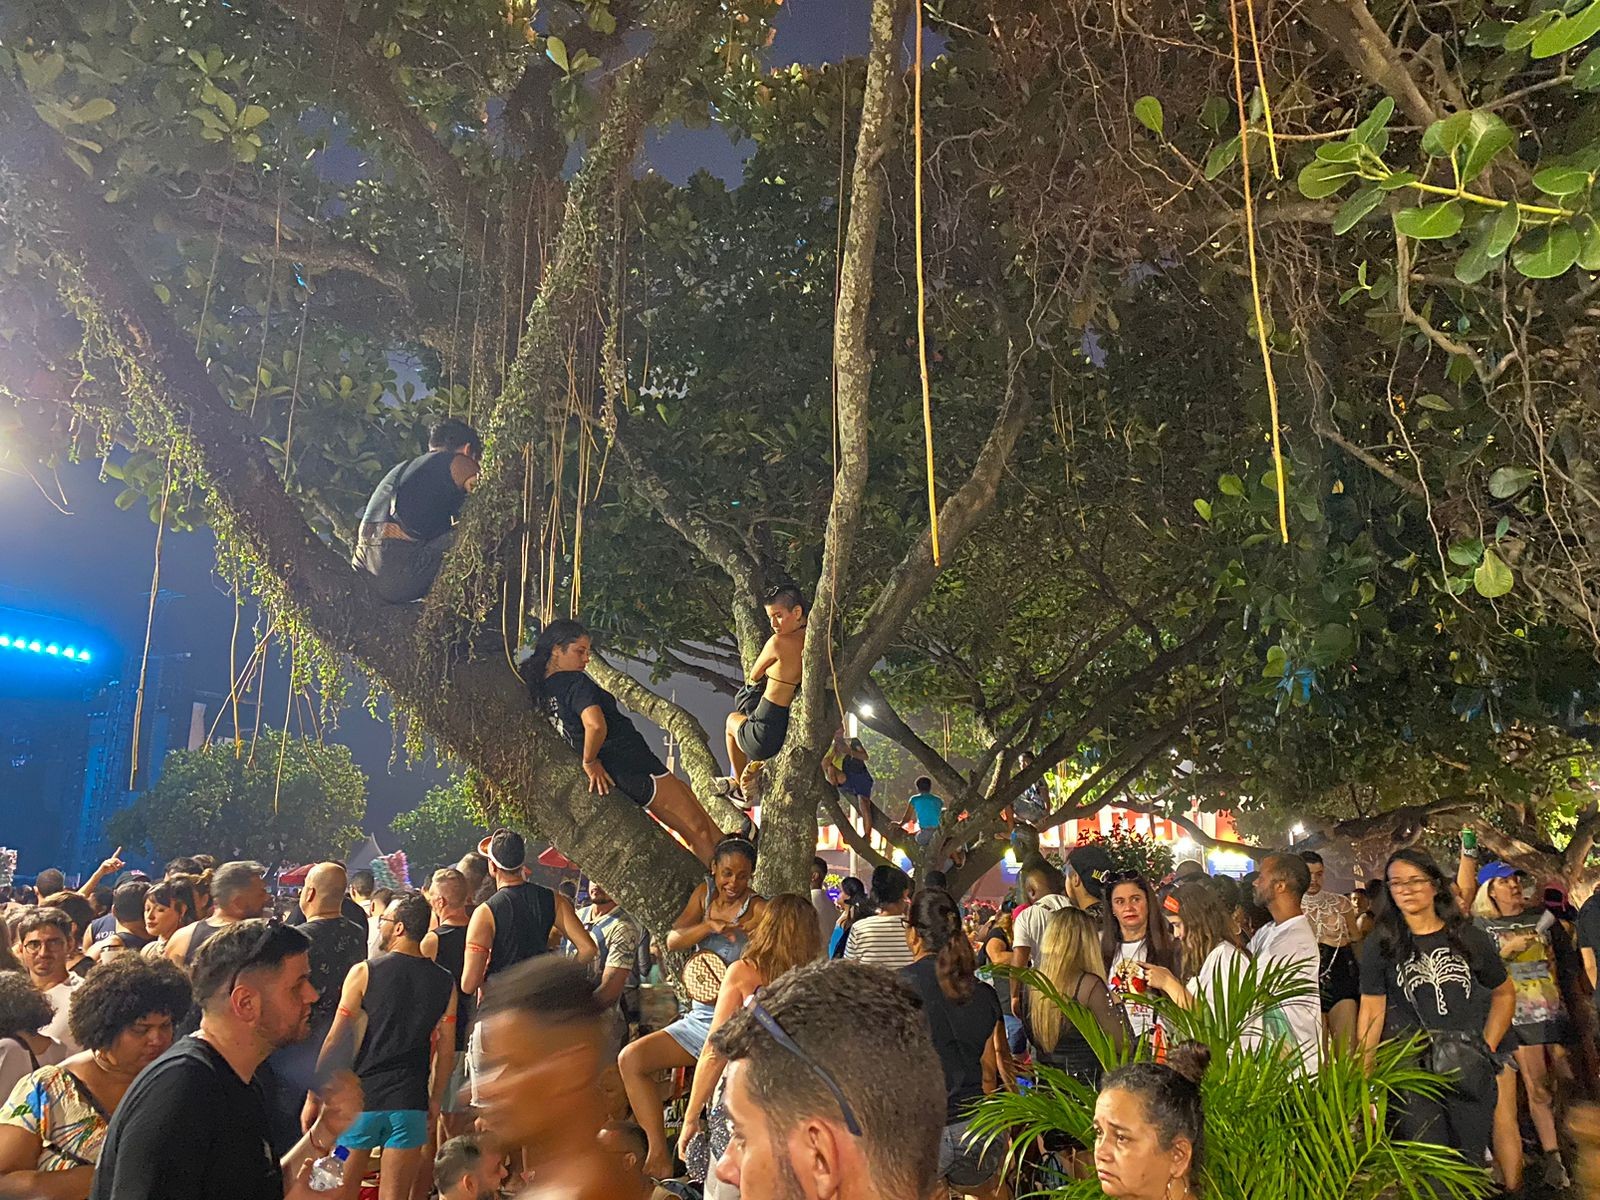 Fãs ficam até 10 horas em árvores para show da Madonna e comemoram: ‘Deu pra ver tudo!’